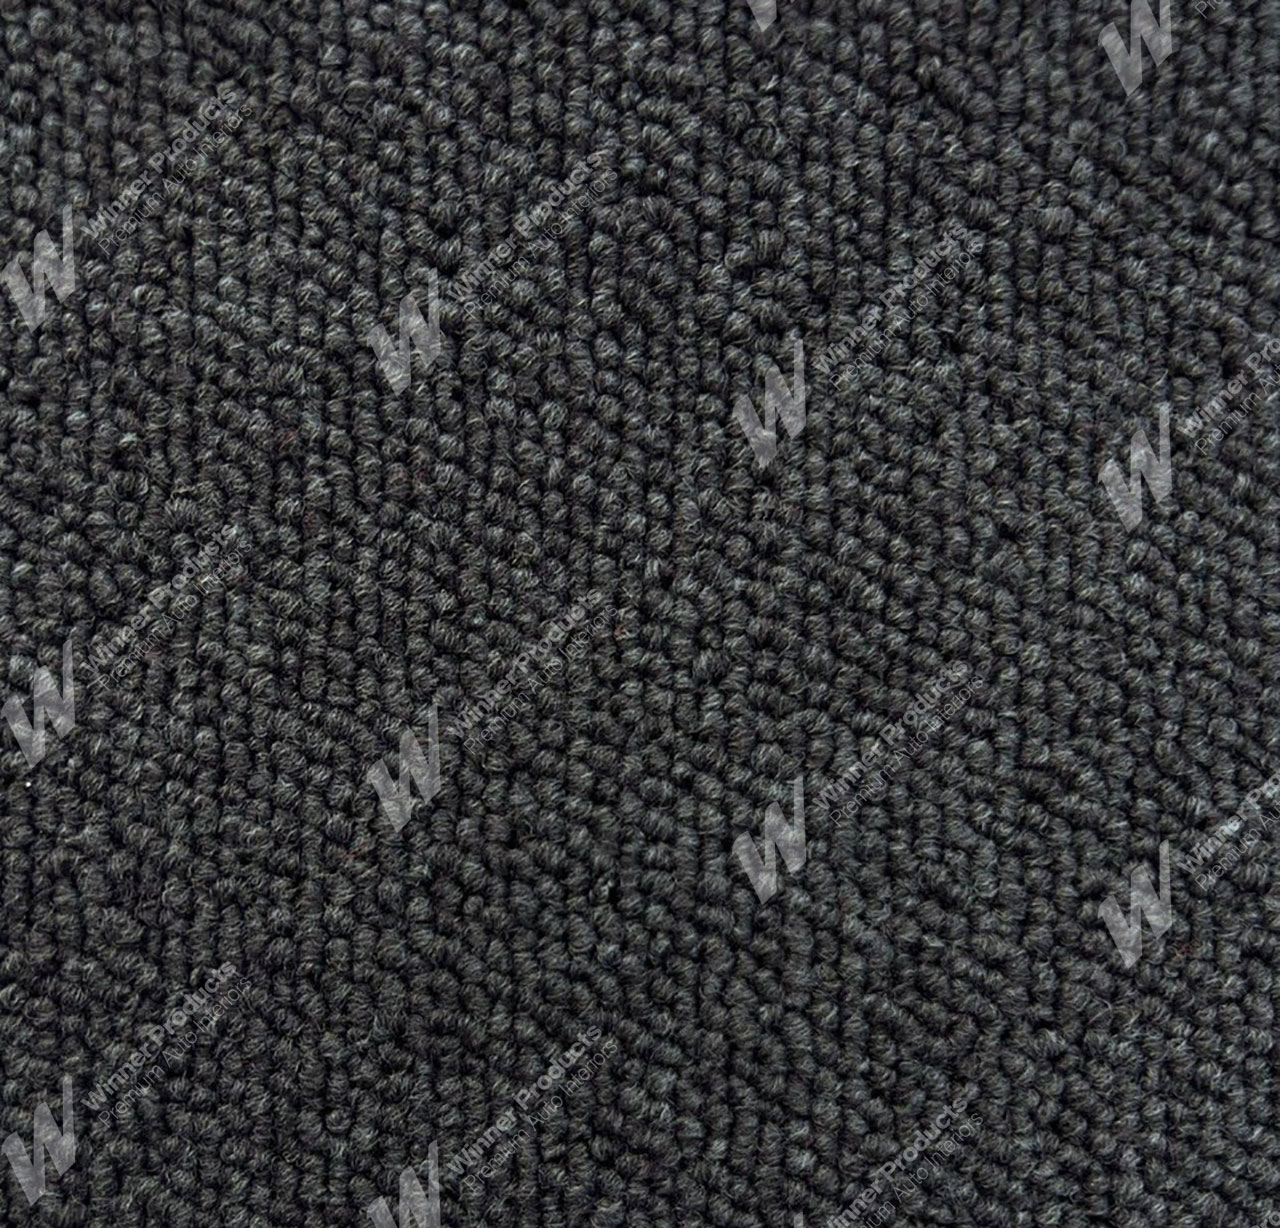 Holden Premier HJ Premier Sedan 14X Dove Grey & Cloth Carpet (Image 1 of 1)